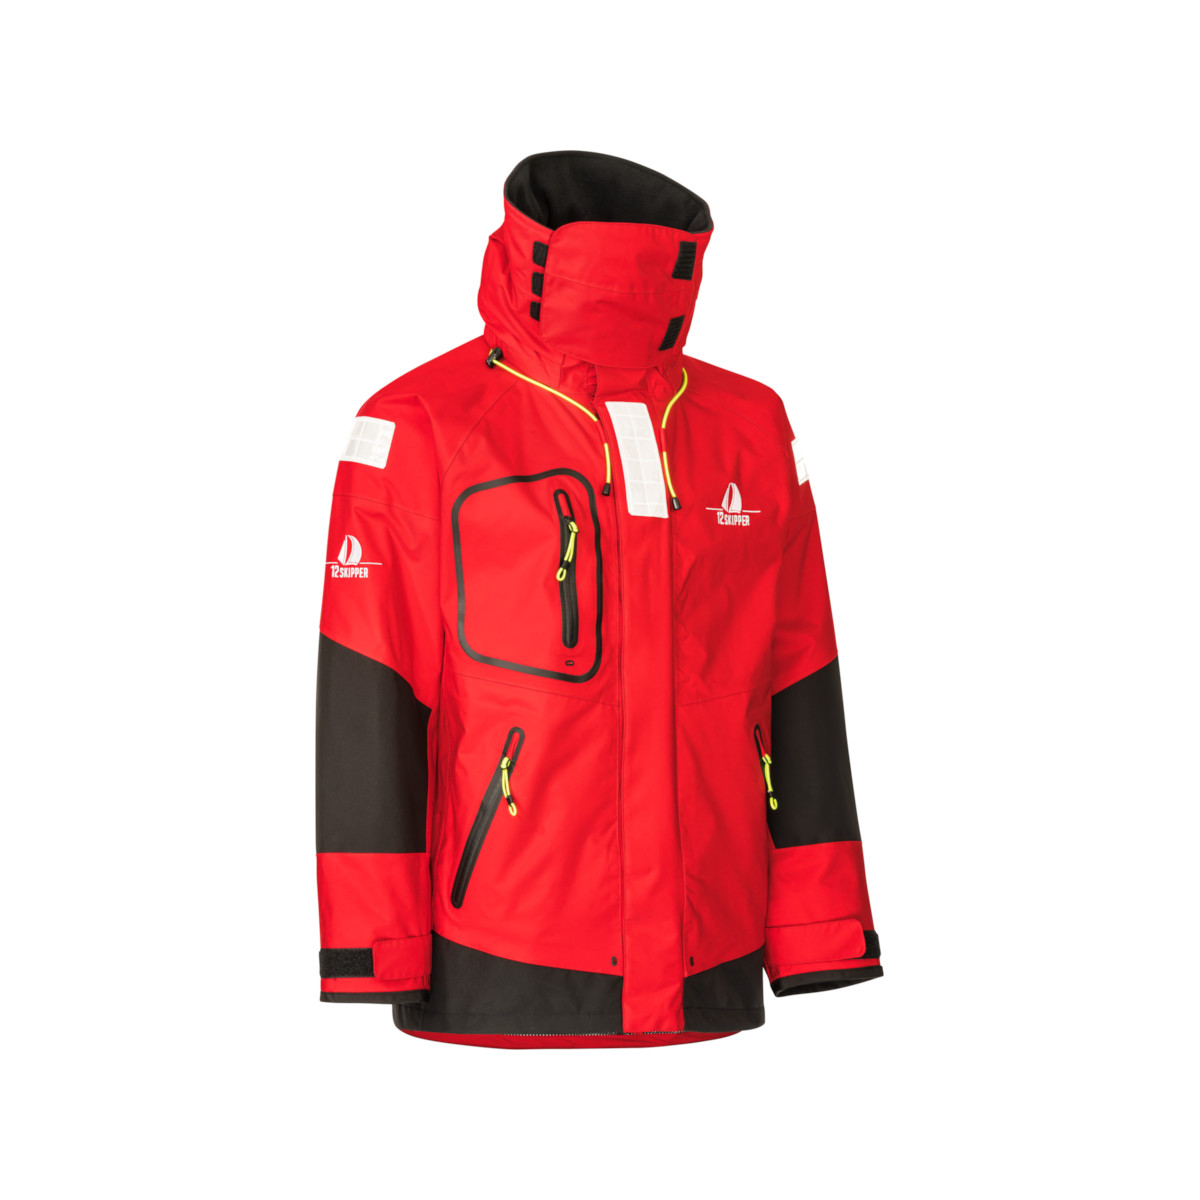 12skipper Magellan veste de quart hauturière, unisexe - rouge, taille L